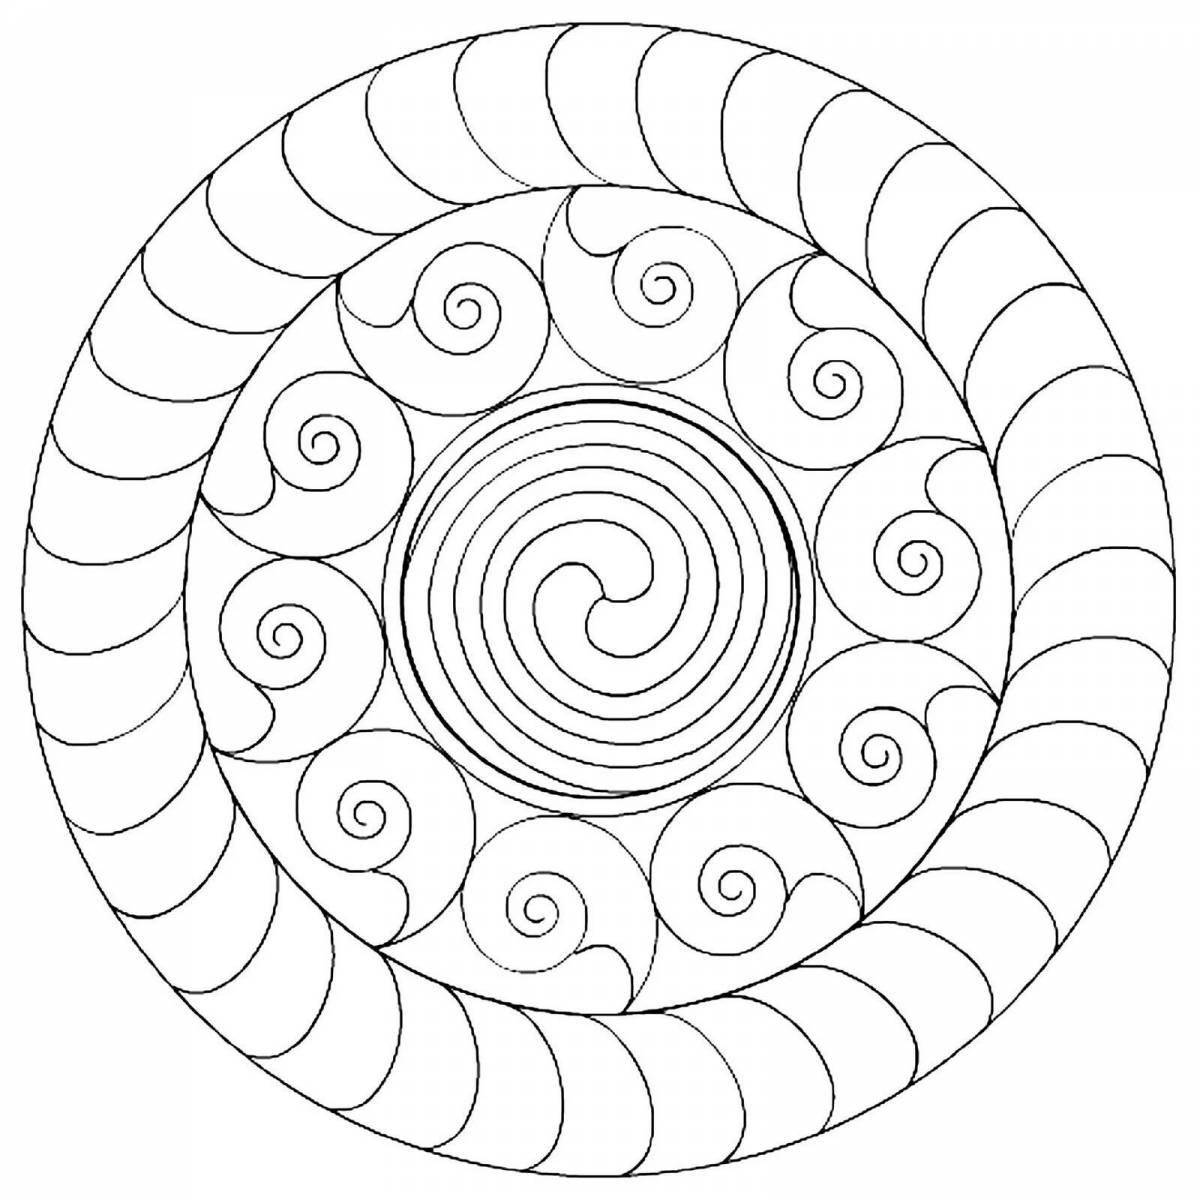 Joyful round spiral coloring